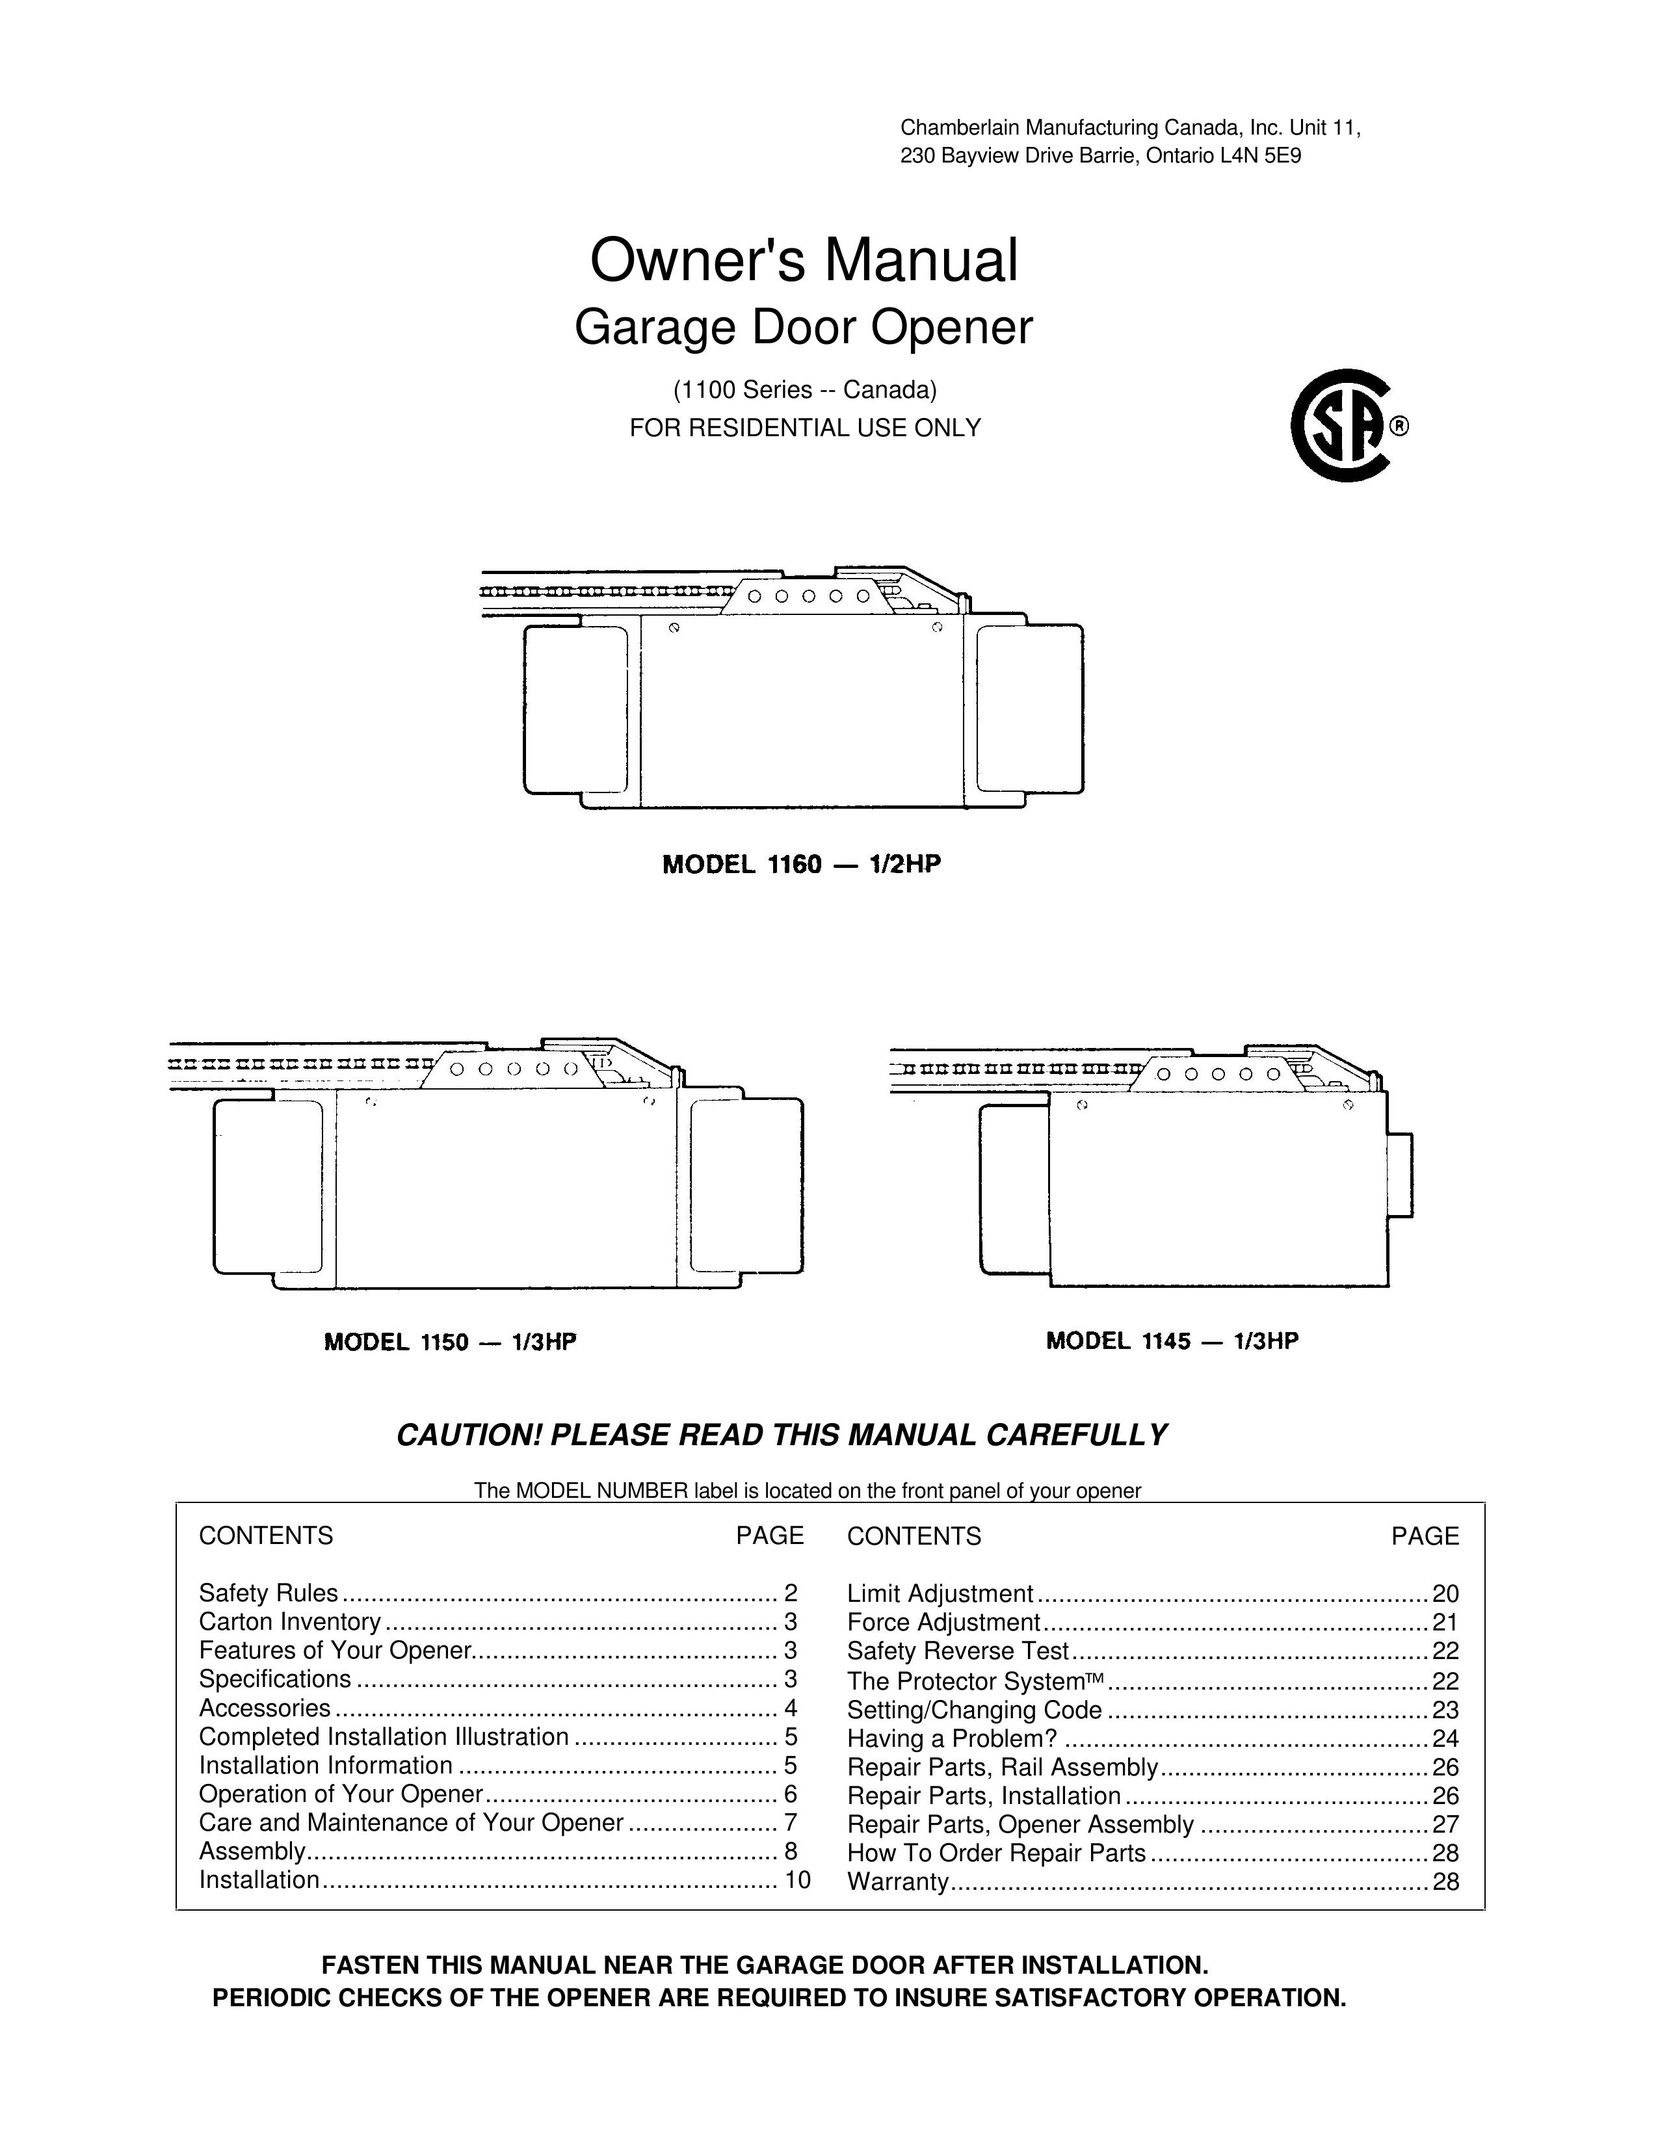 Chamberlain 1150-1/3HP Garage Door Opener User Manual (Page 1)